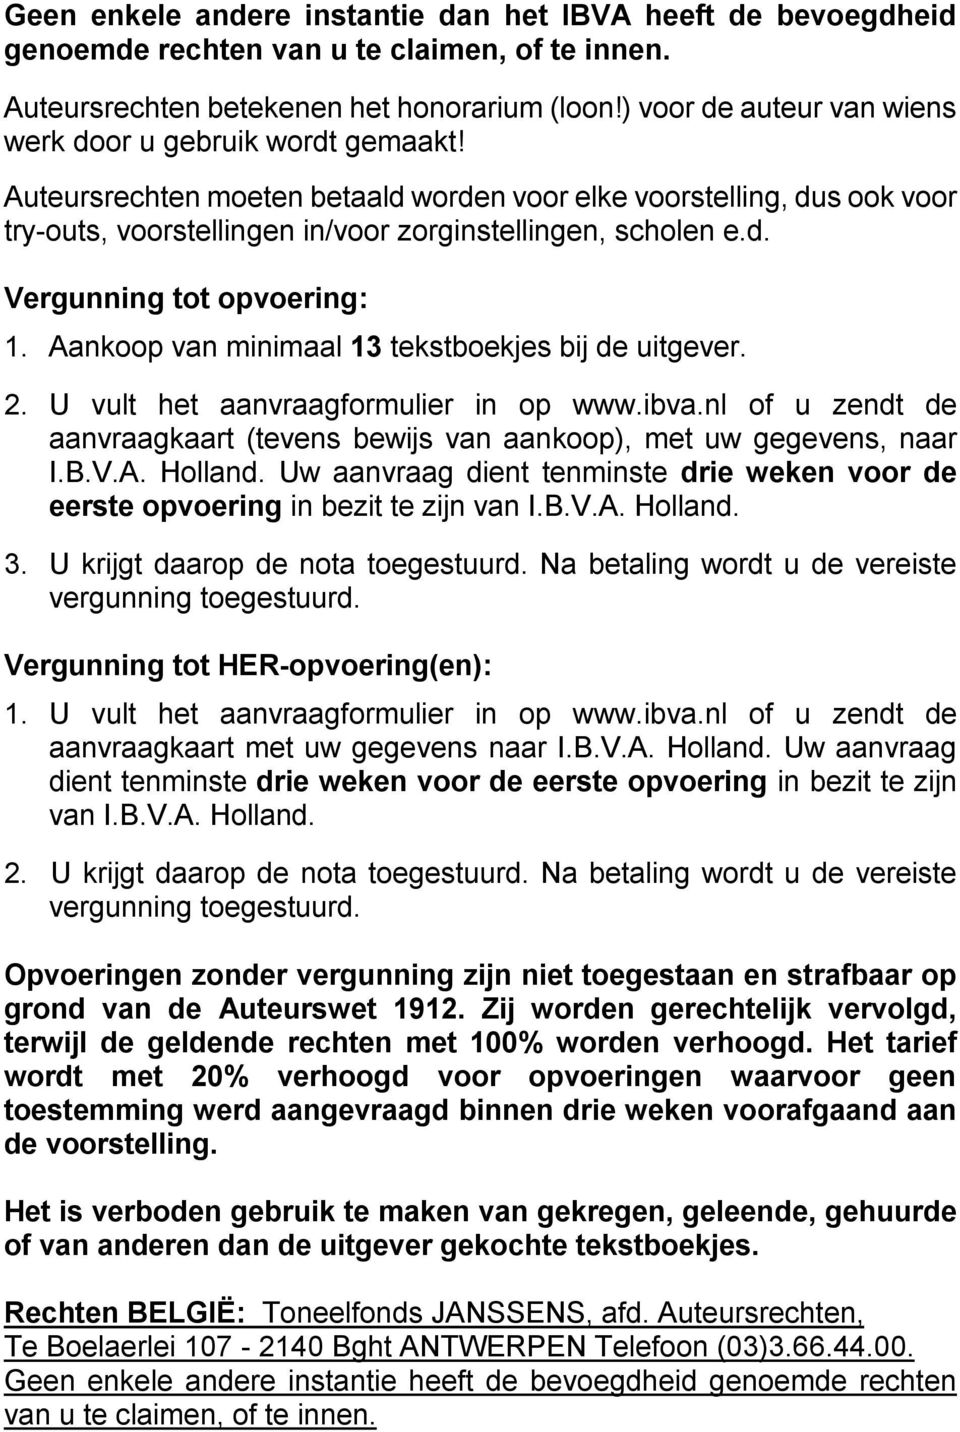 Aankoop van minimaal 13 tekstboekjes bij de uitgever. 2. U vult het aanvraagformulier in op www.ibva.nl of u zendt de aanvraagkaart (tevens bewijs van aankoop), met uw gegevens, naar I.B.V.A. Holland.